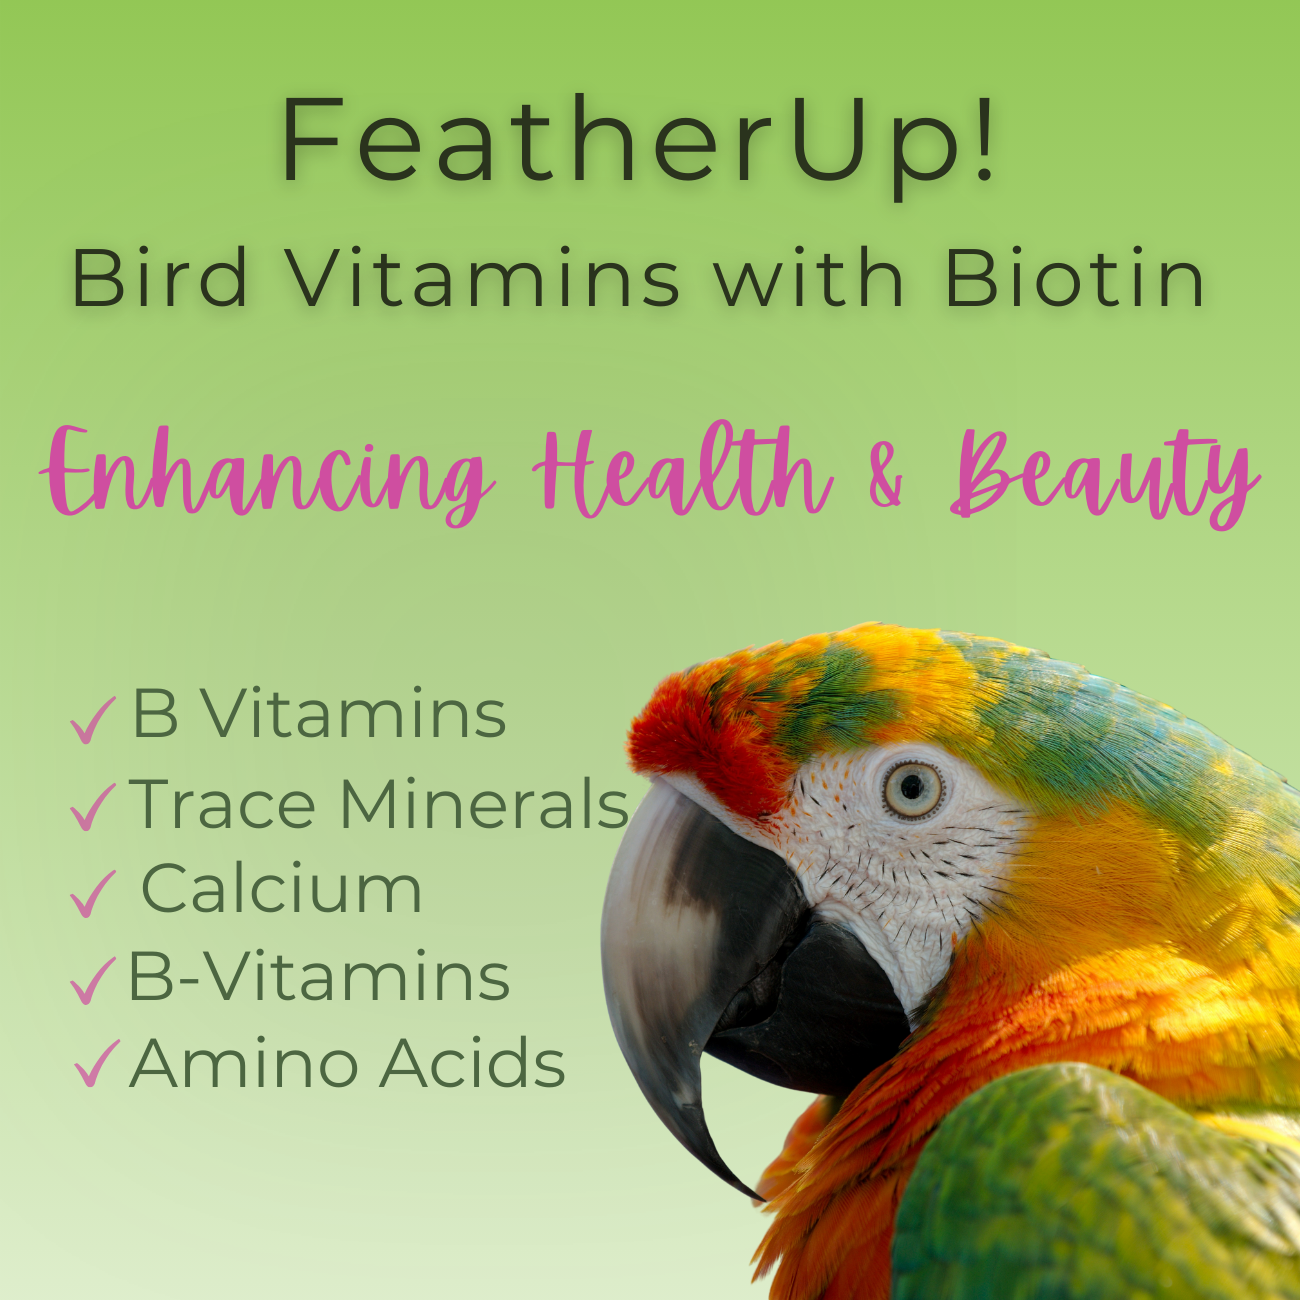 FeatherUp! Bird Vitamins with Biotin